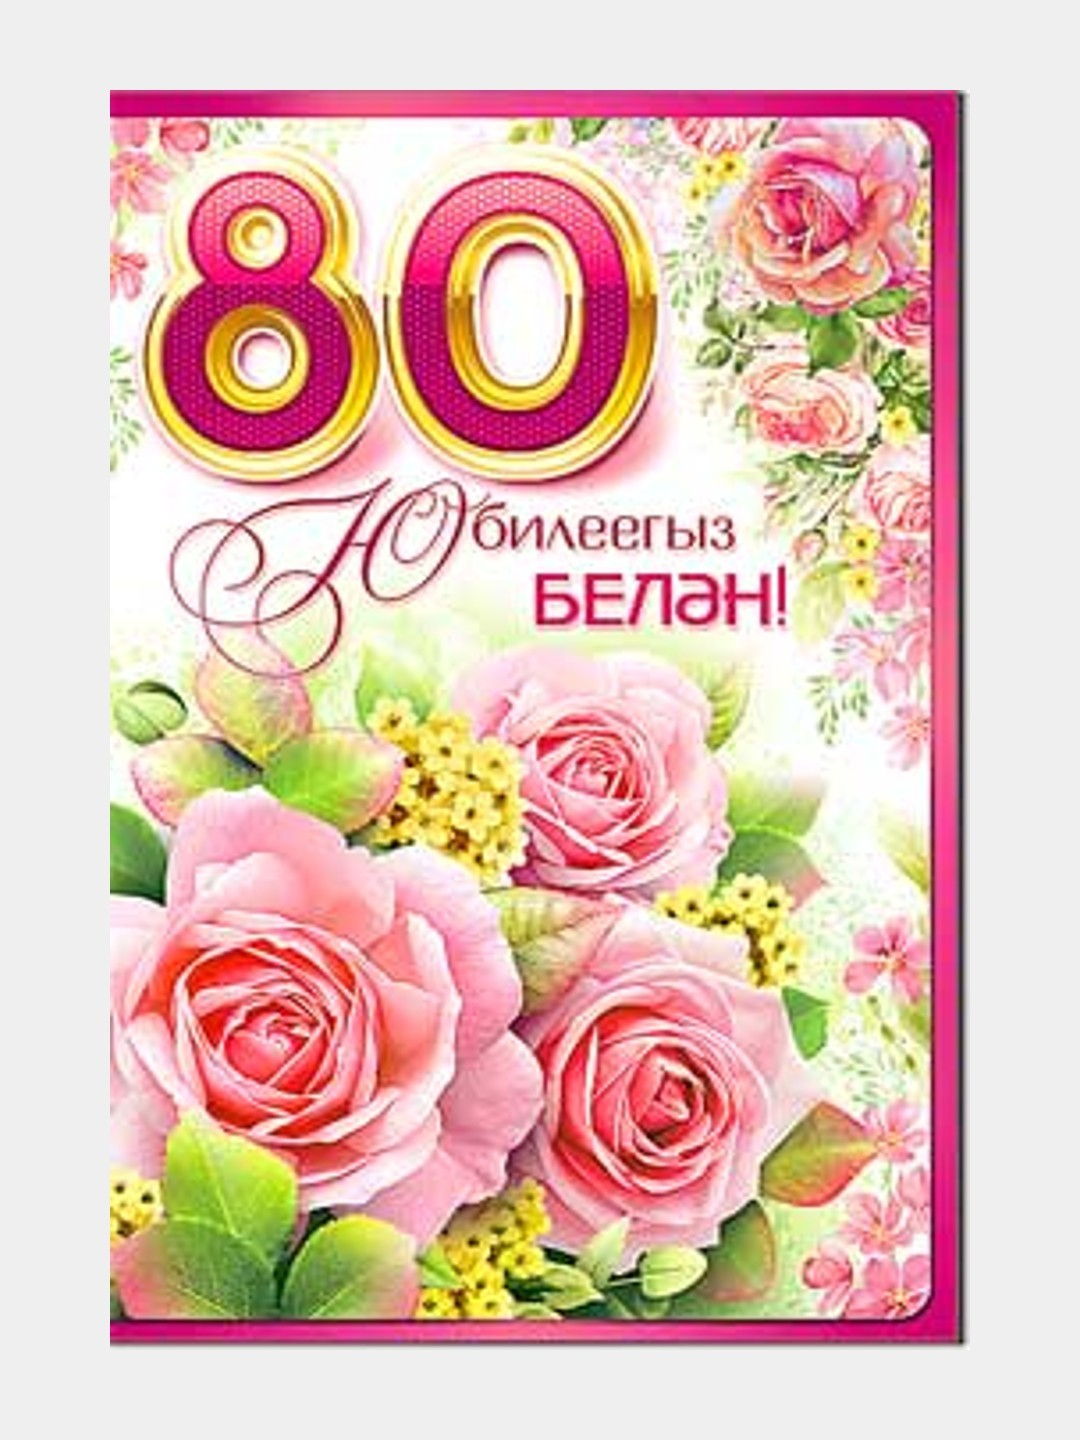 Советские новогодние открытки с 1980 по 1981-й год. Создаём себе новогоднее настроение!